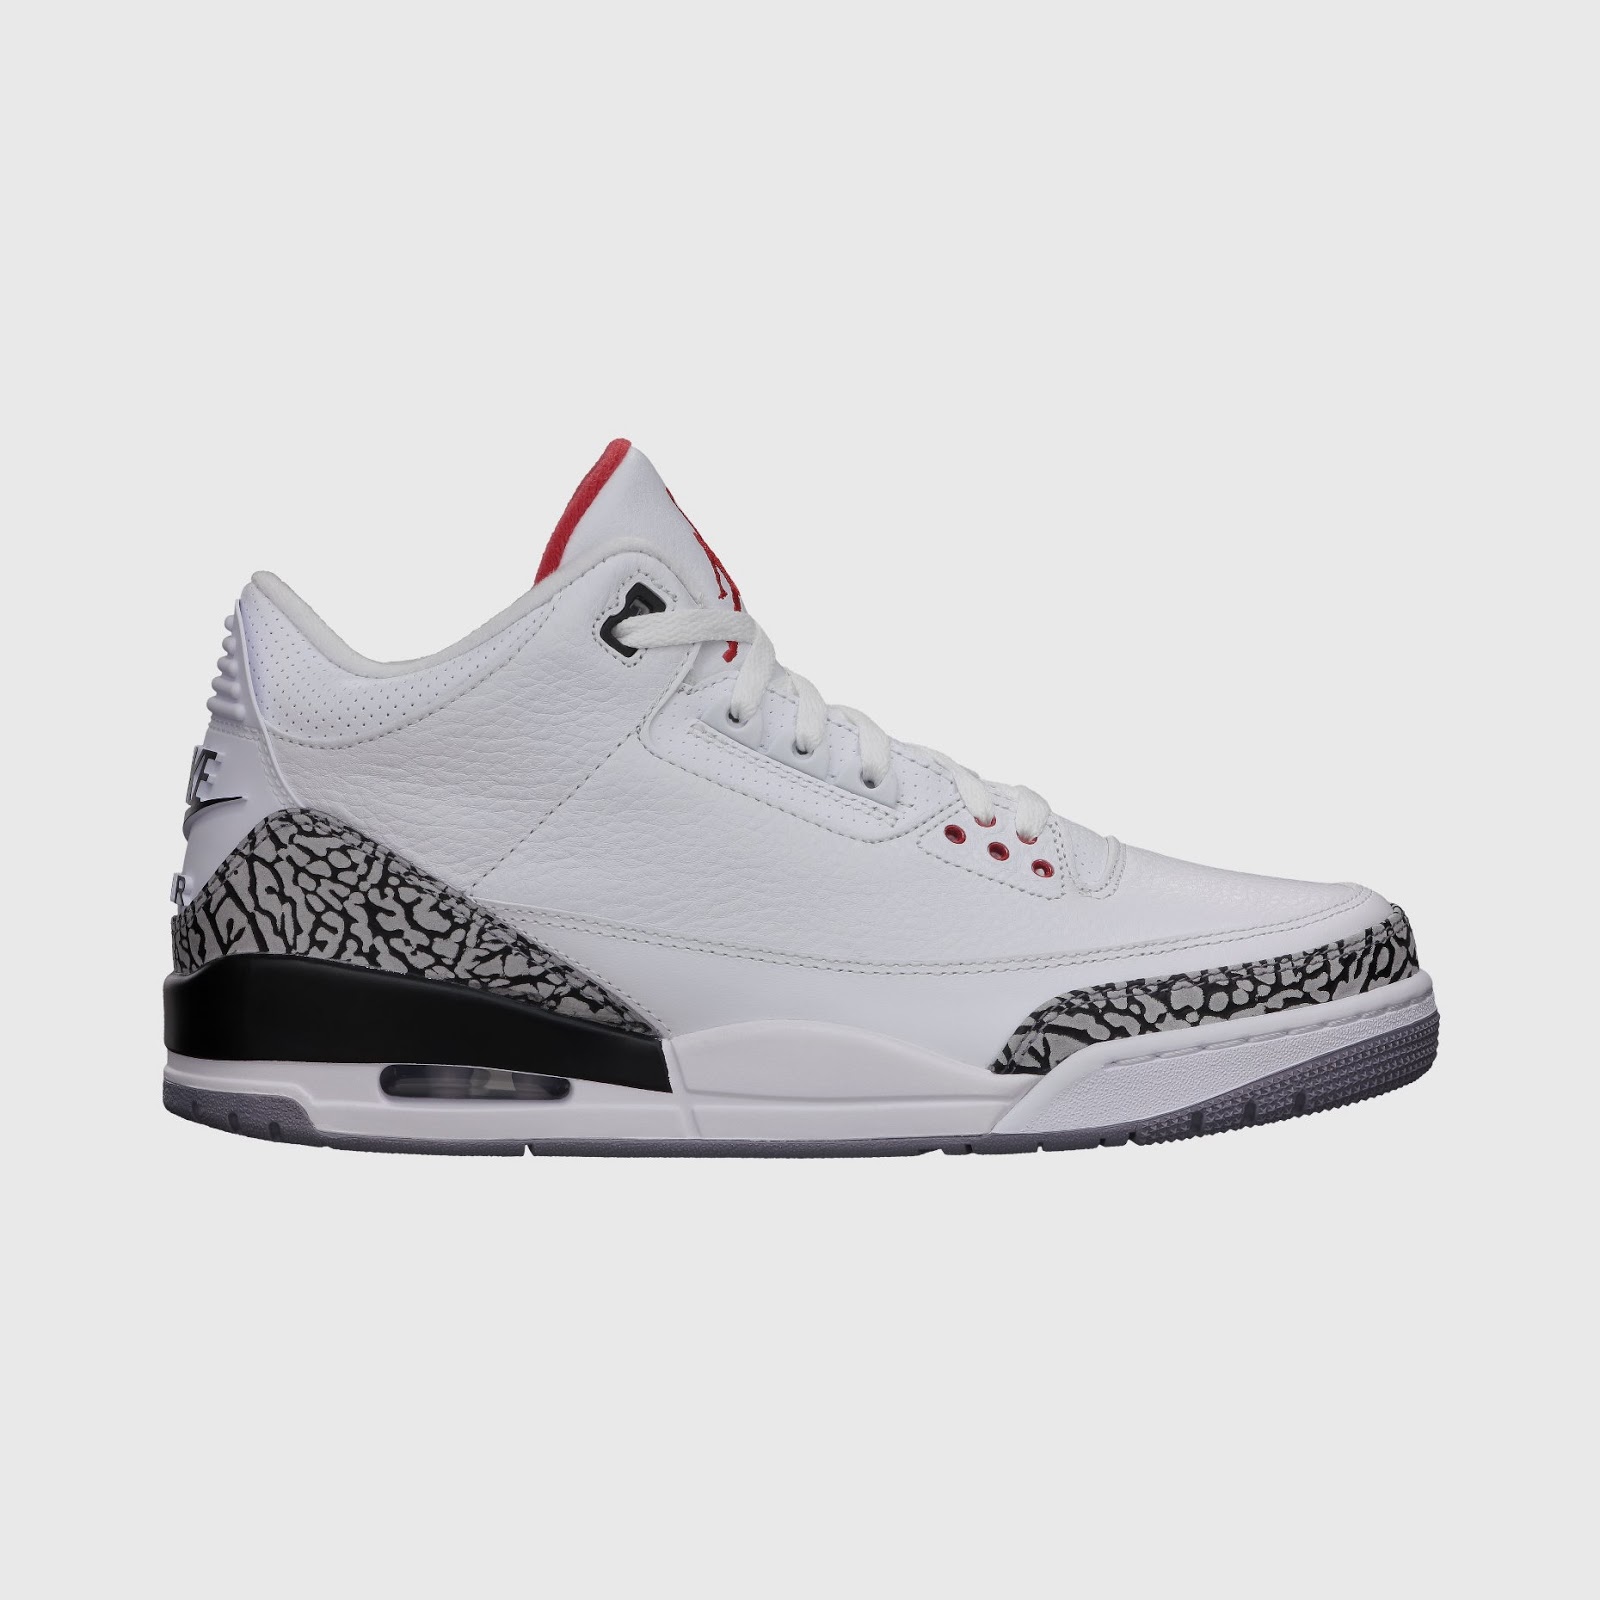 Nike Air Jordan Retro Basketball Shoes and Sandals!: AIR JORDAN 3 RETRO